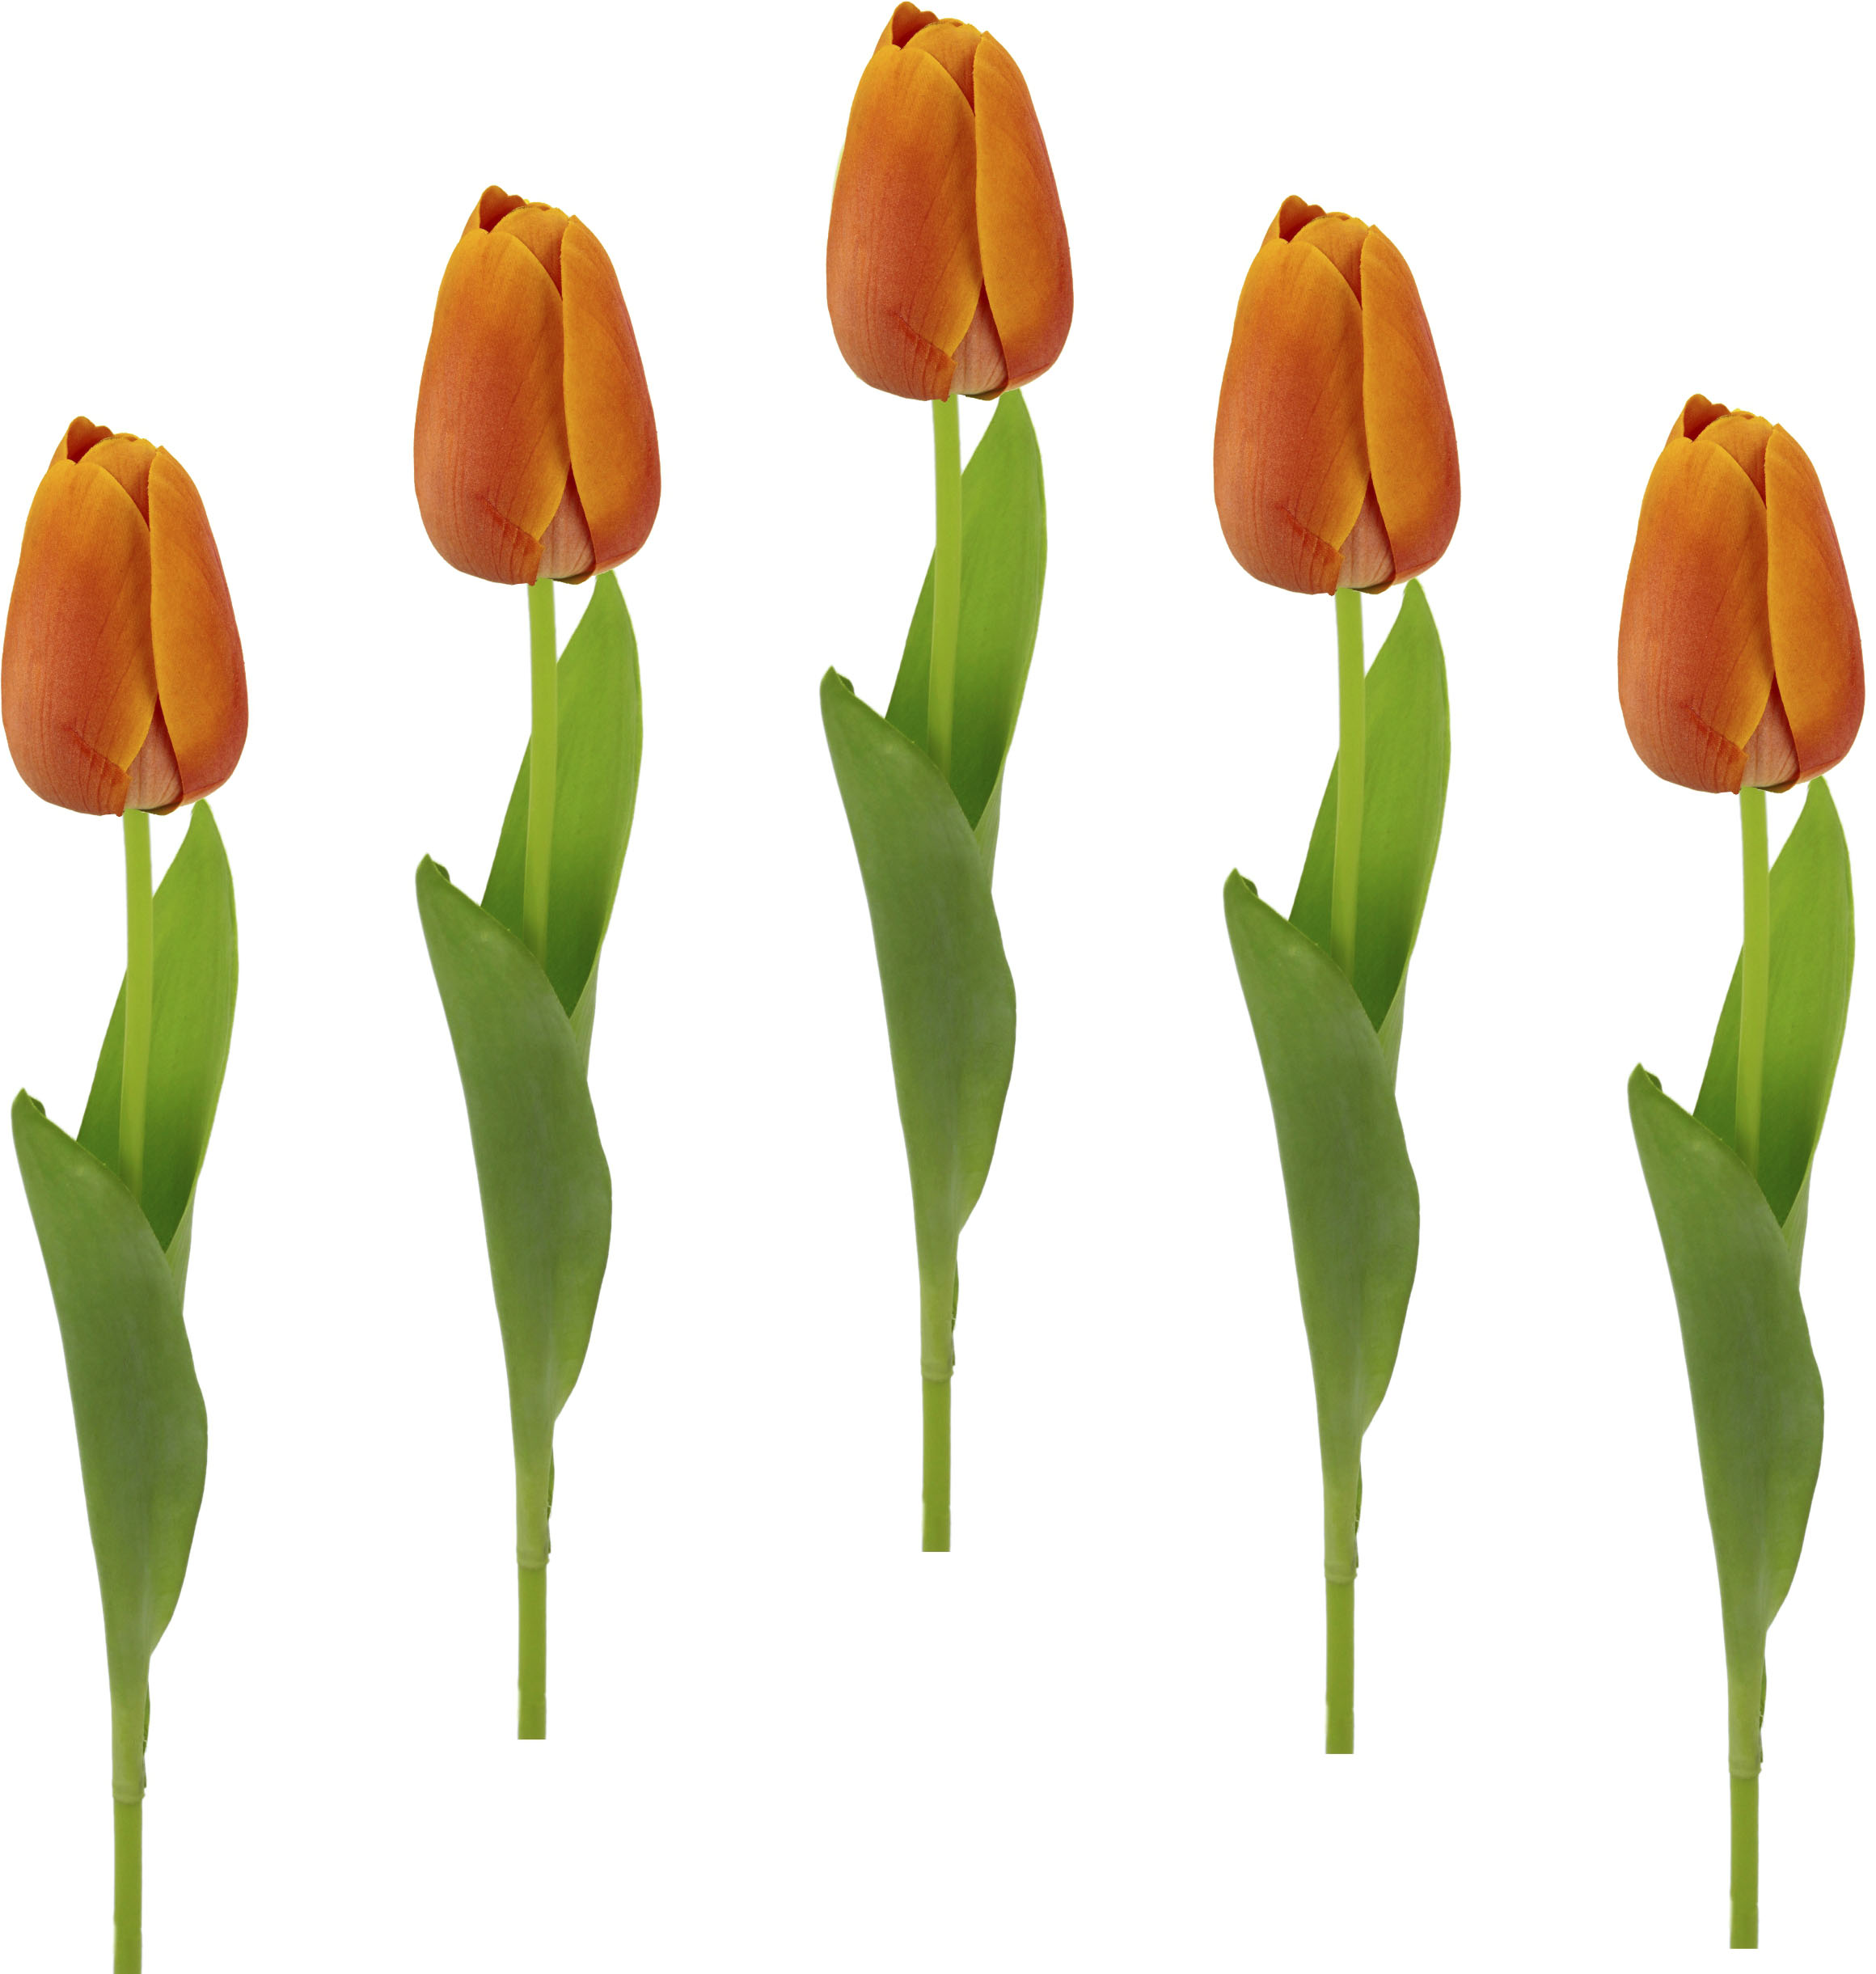 kaufen auf künstliche »Real Tulpenknospen, Raten Kunstblumen, I.GE.A. Kunstblume 5er Touch Stielblume Tulpen«, Set